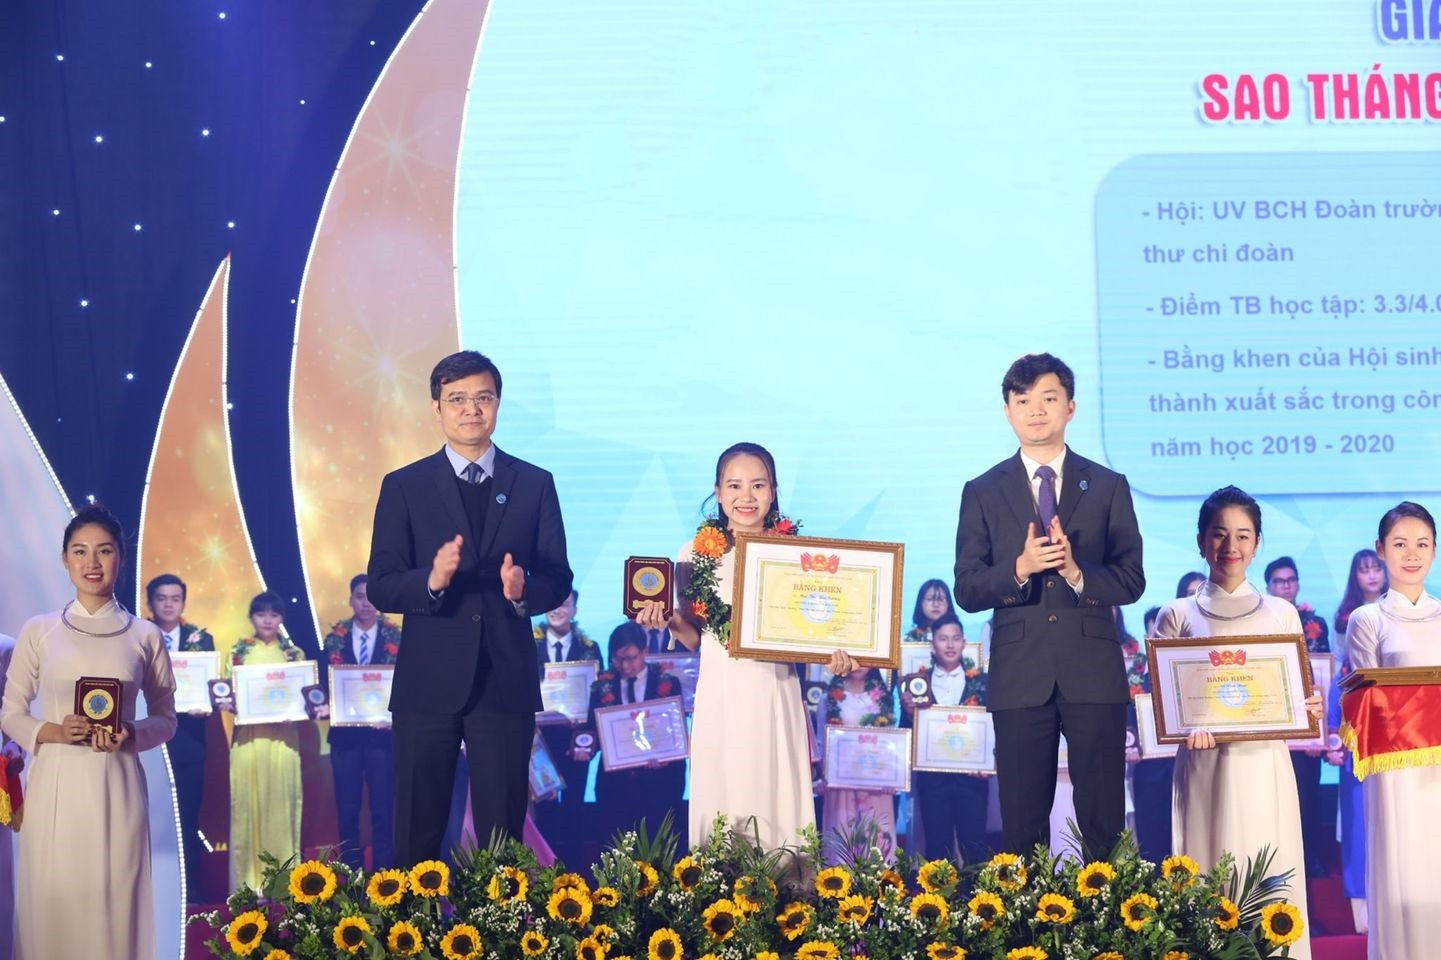 Mai Thị Thu Sương nhận giải thưởng “Sao tháng Giêng” của Trung ương Hội Sinh viên Việt Nam. Ảnh: Nhân vật cung cấp